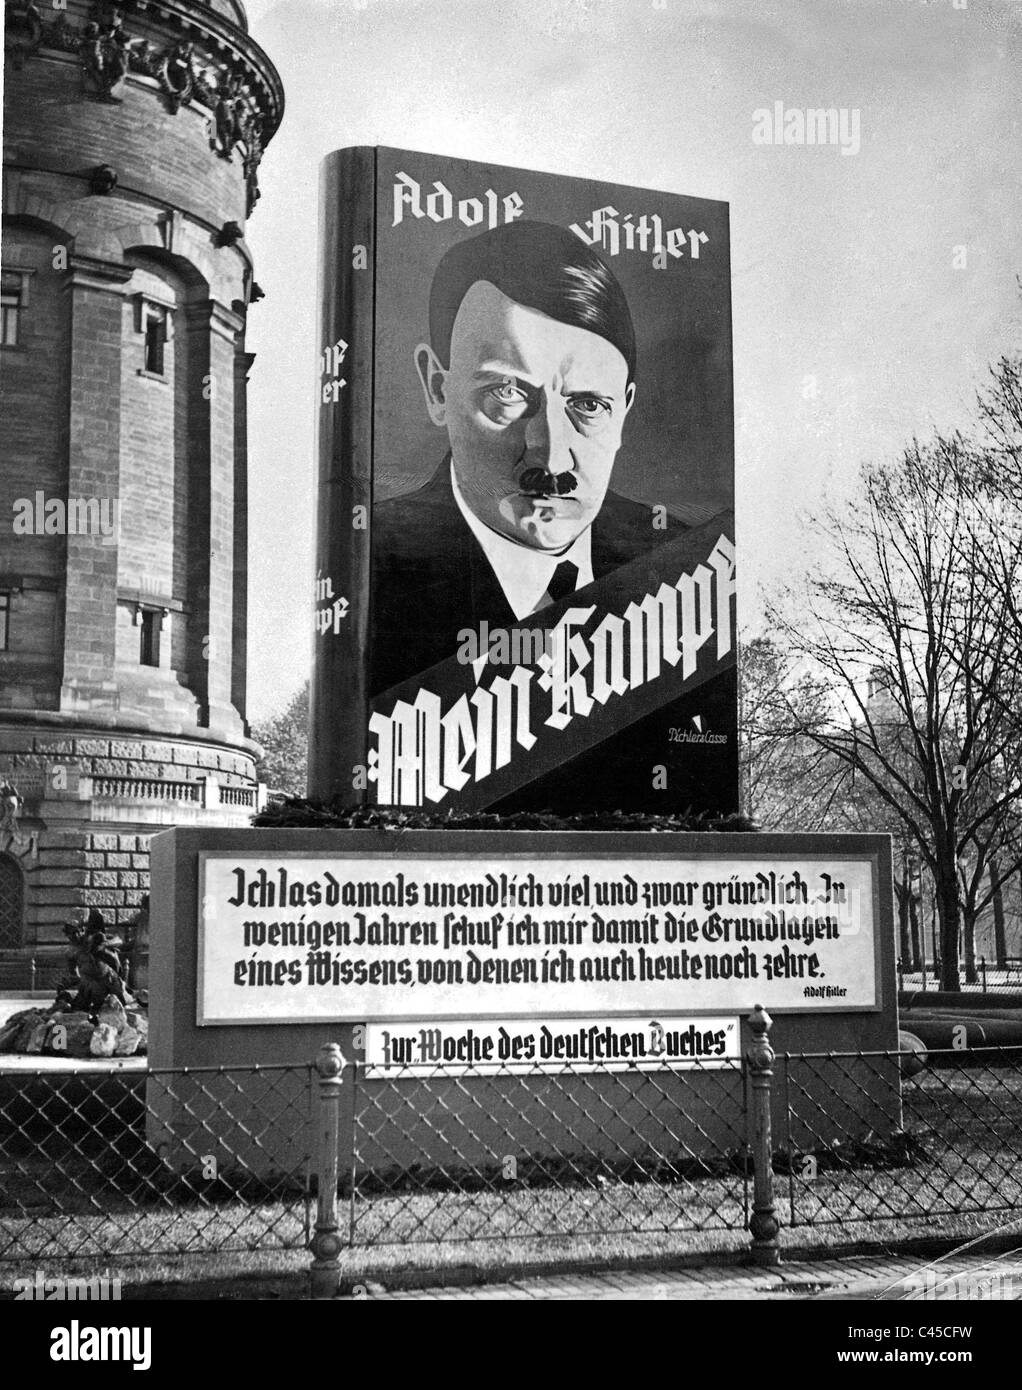 Werbeplakat für Adolf Hitlers Buch "Mein Kampf" Stockfoto